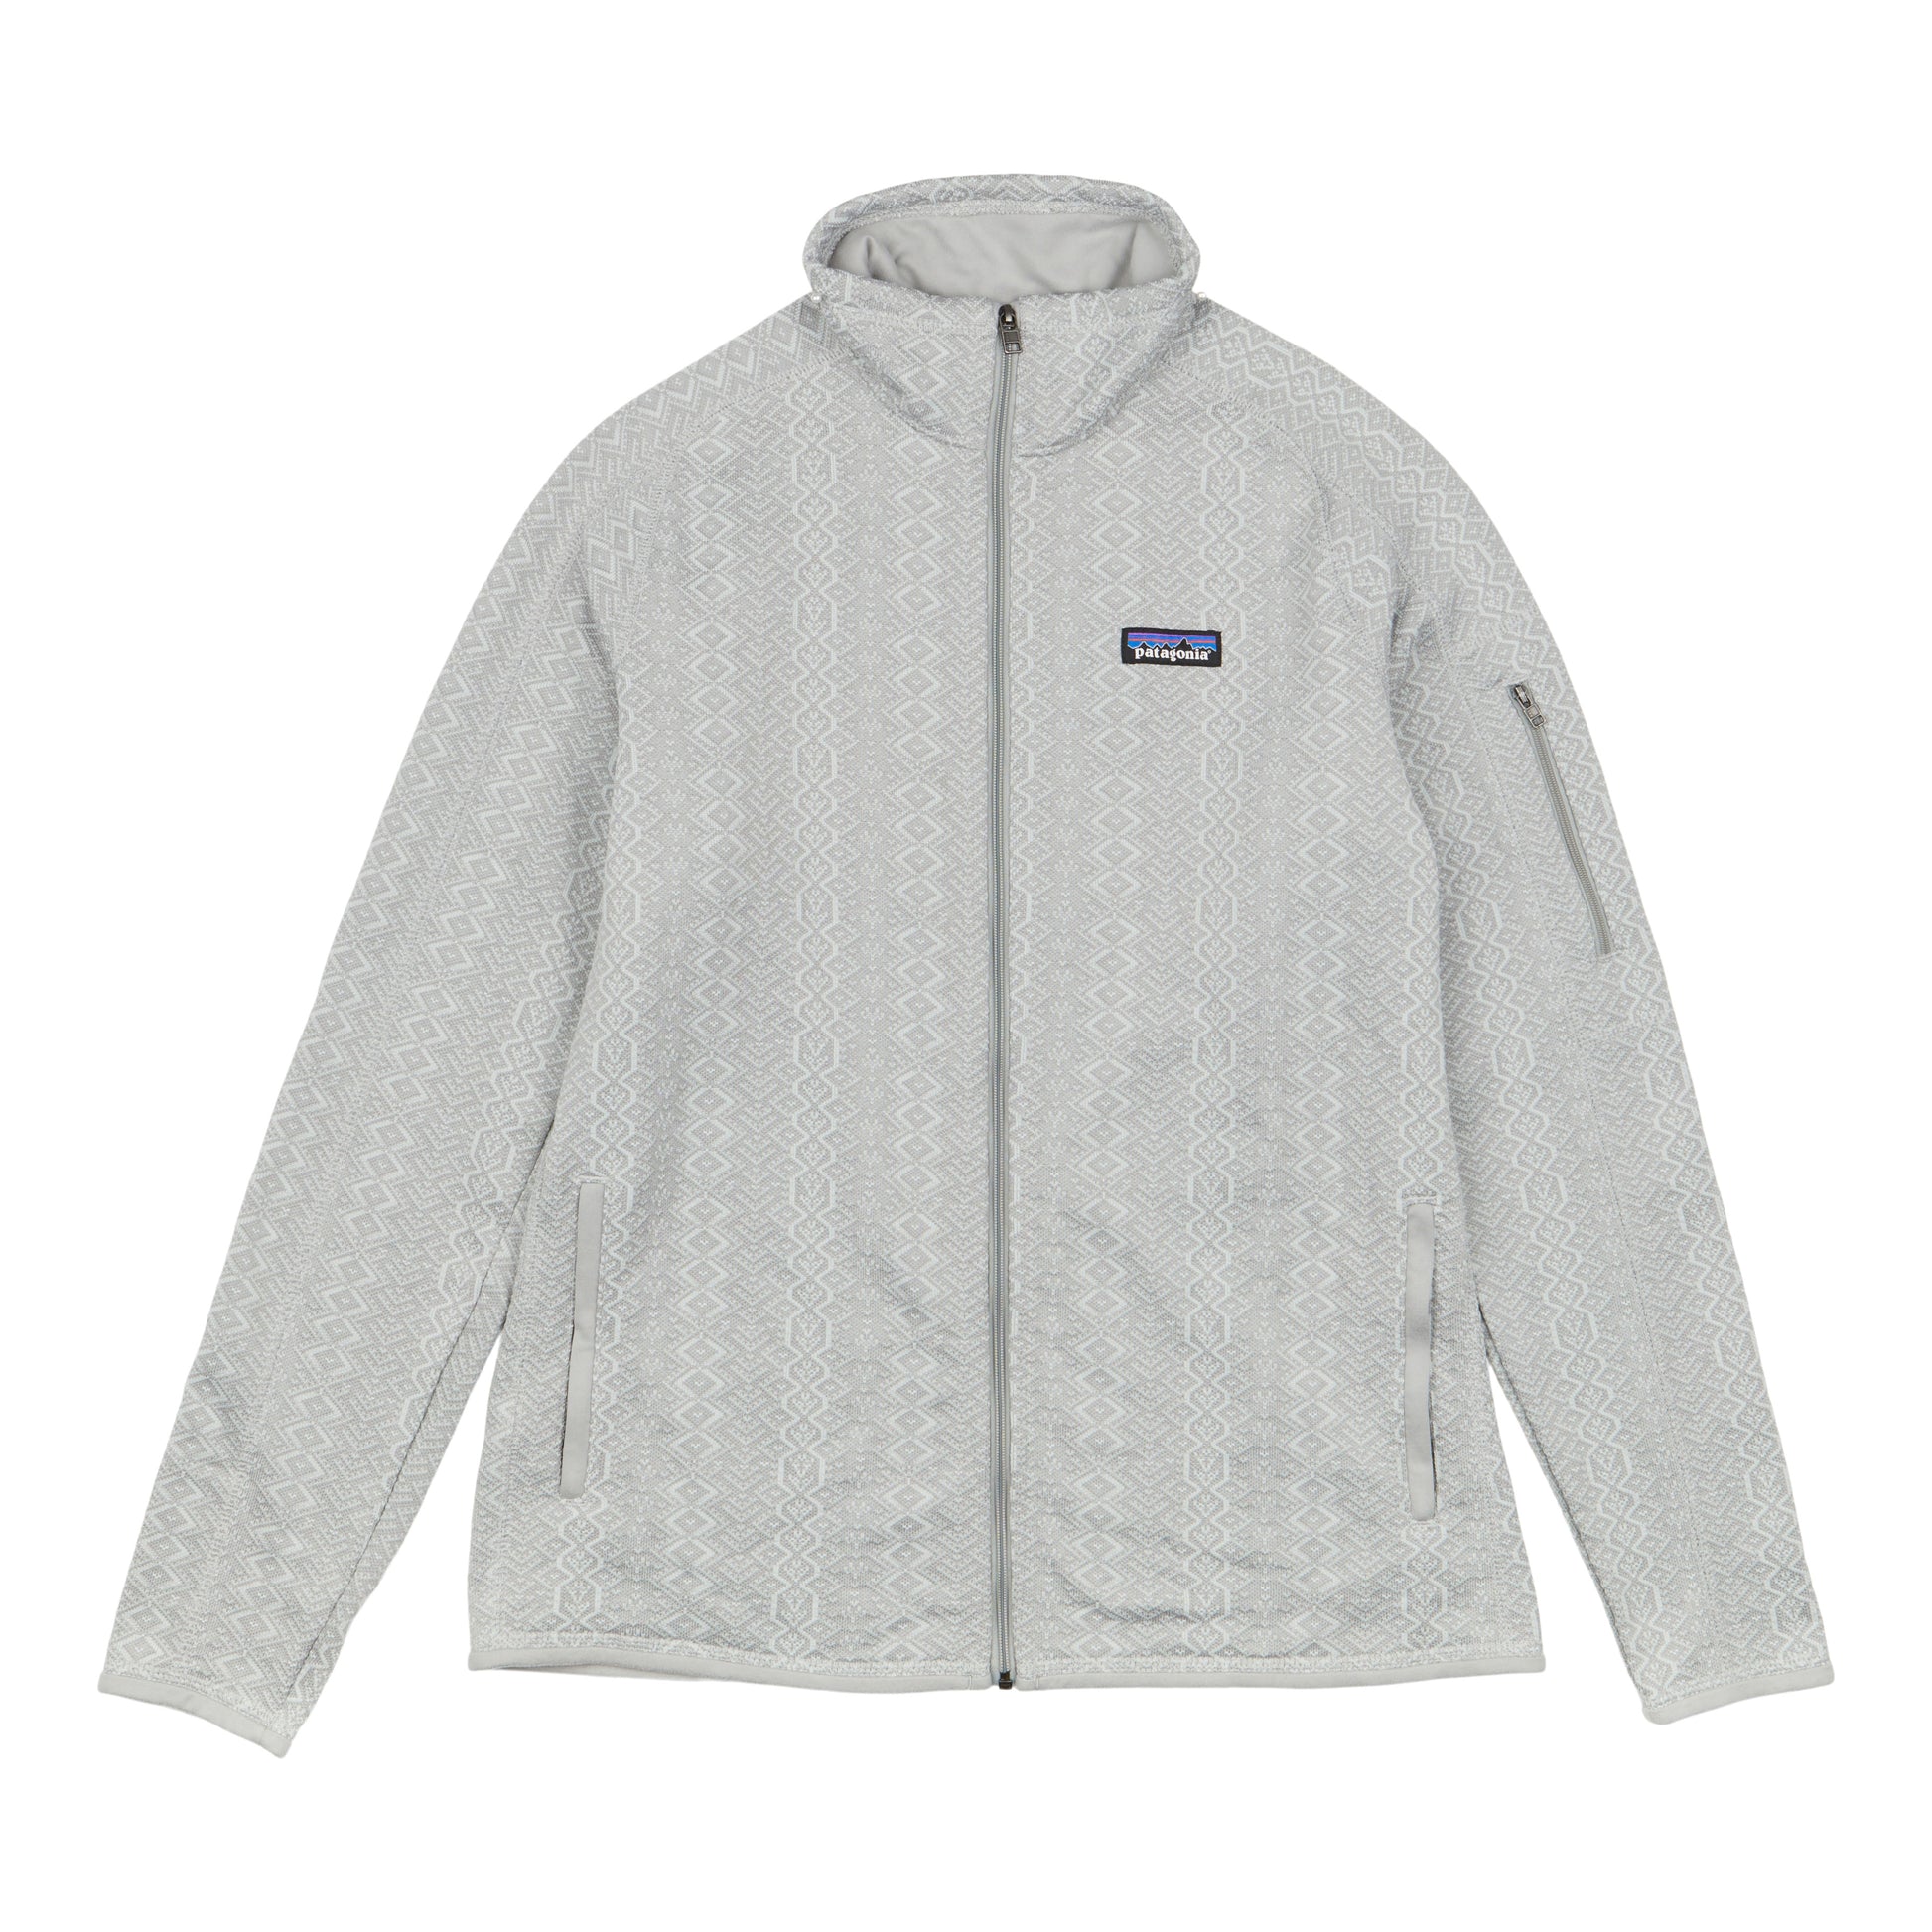 Patagonia Women's Better Sweater Fleece Jacket in Birch White